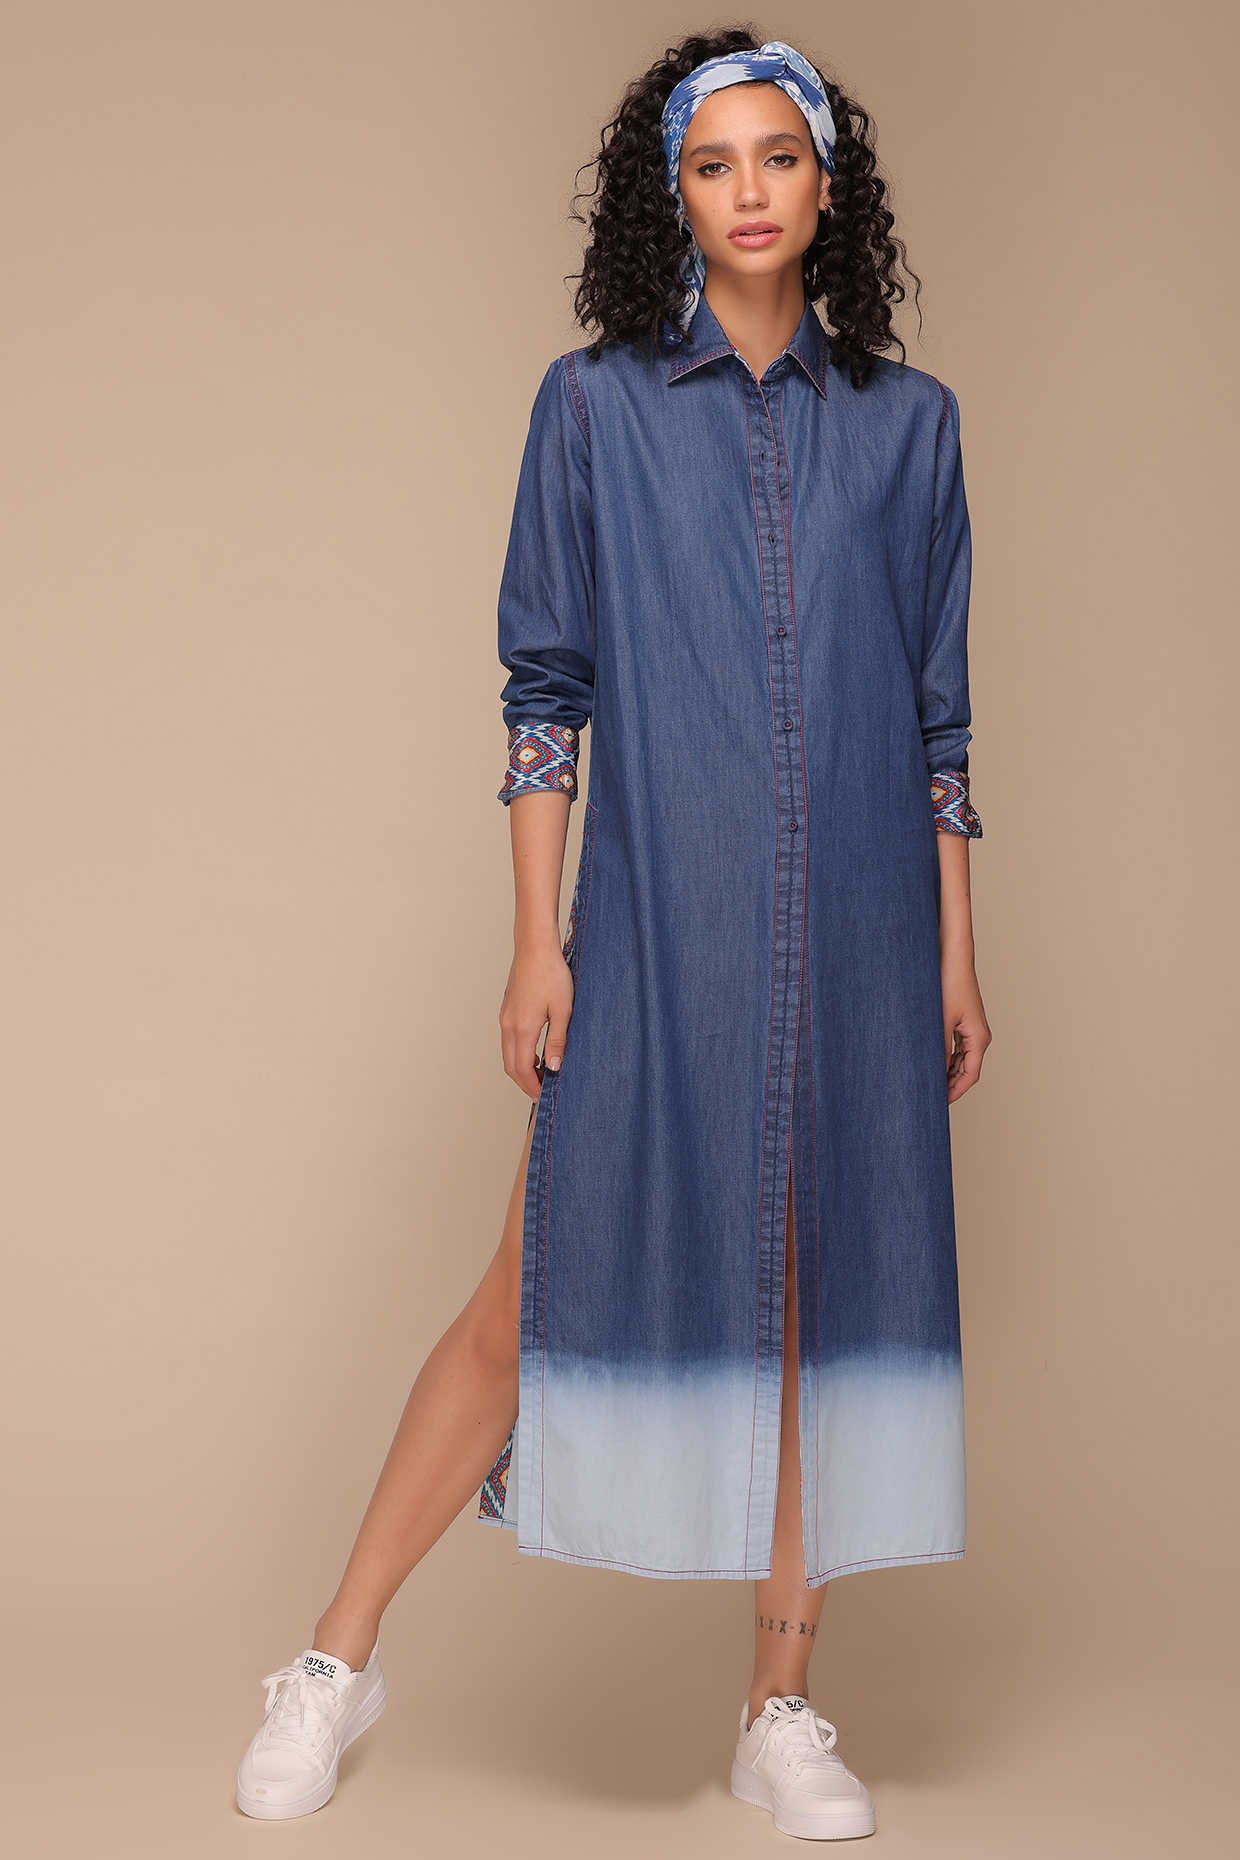 Younique Jeans Women's Retro Sparkle Stretch Denim Maxi Dress Size M | eBay